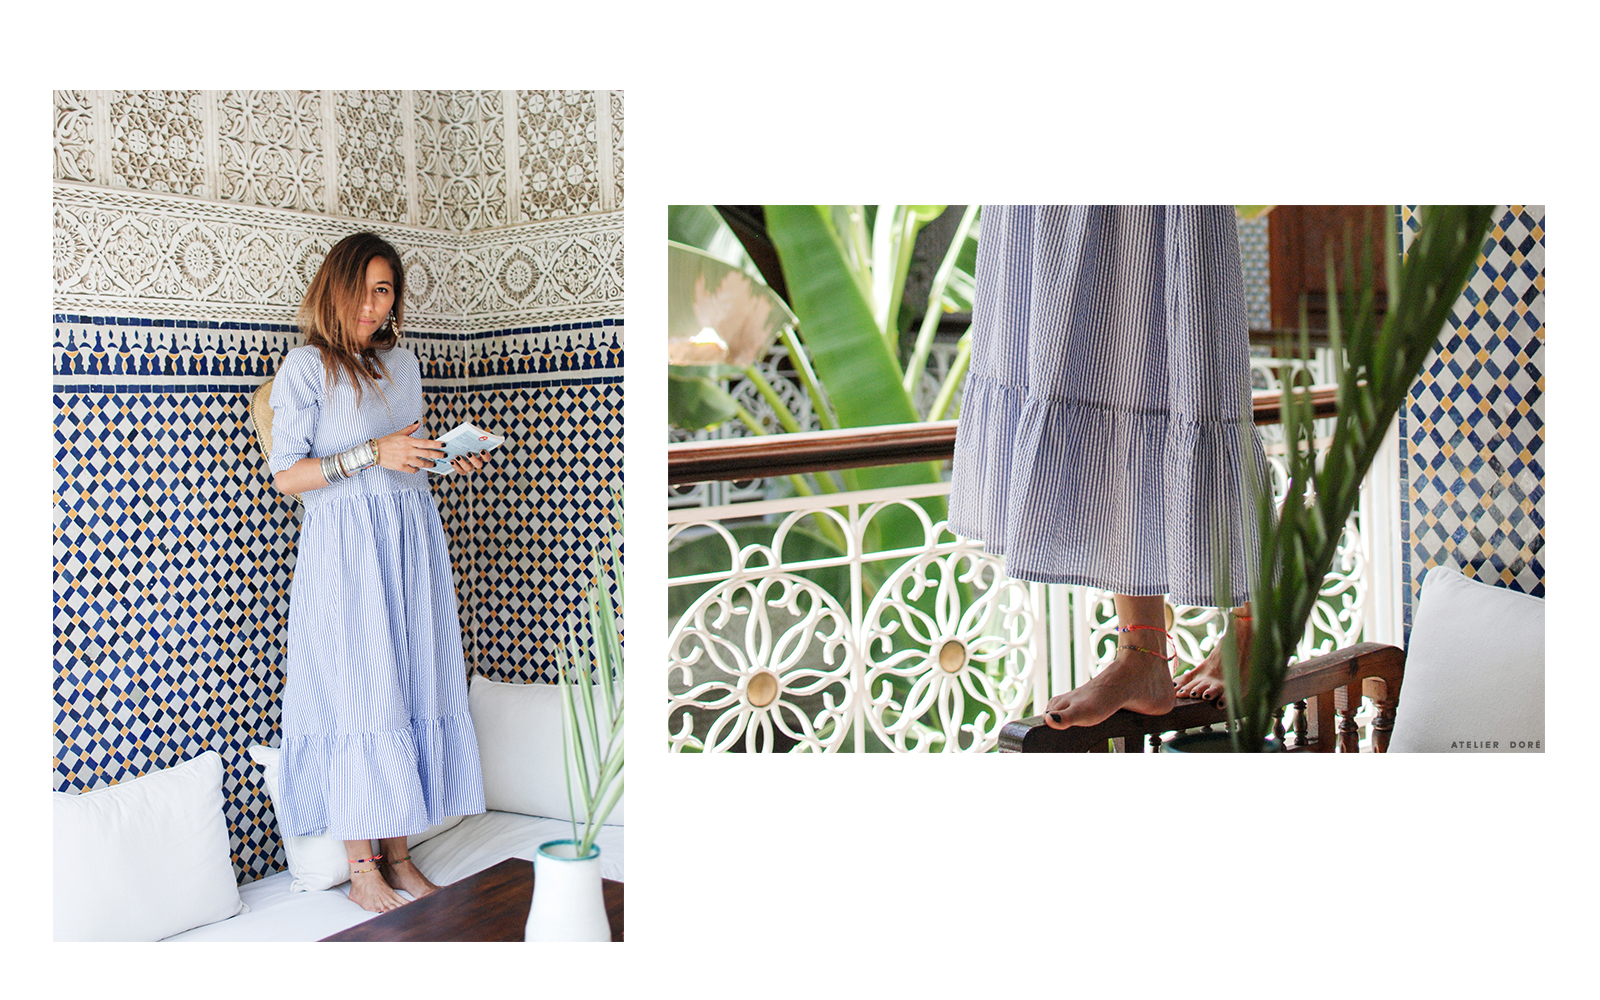 fashion 3 looks sofia morocco atelier dore